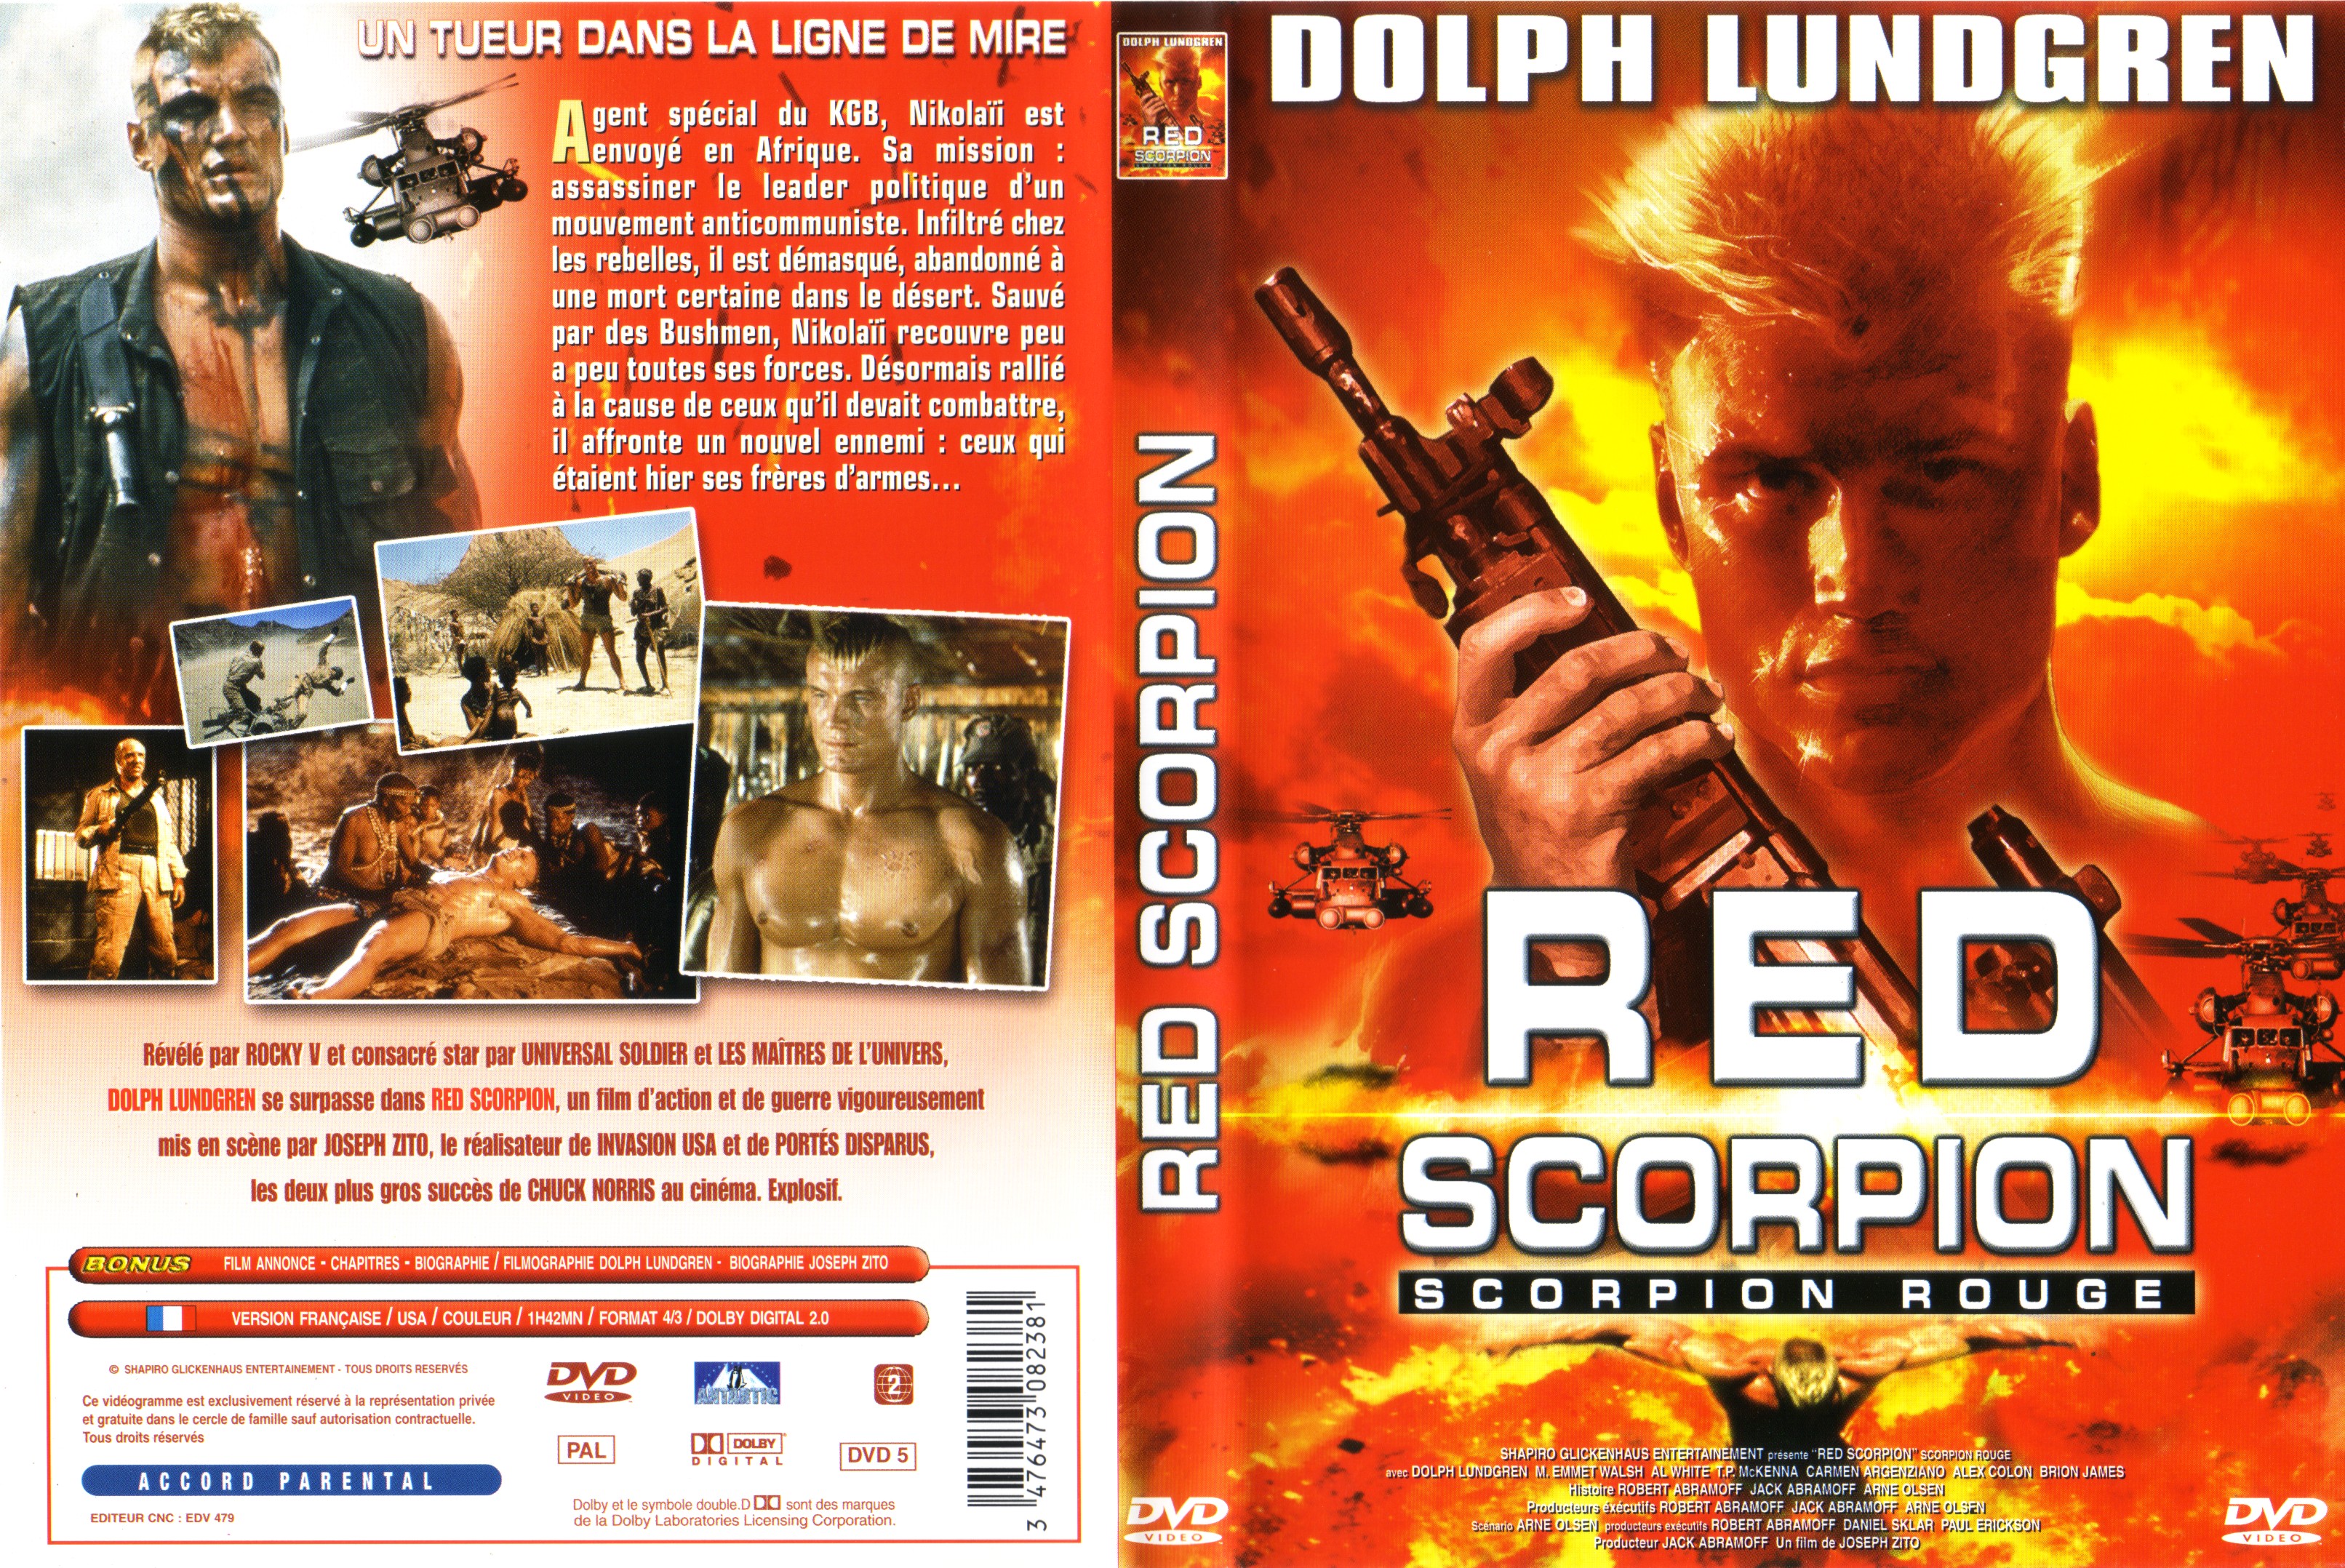 Jaquette DVD Le scorpion rouge v2